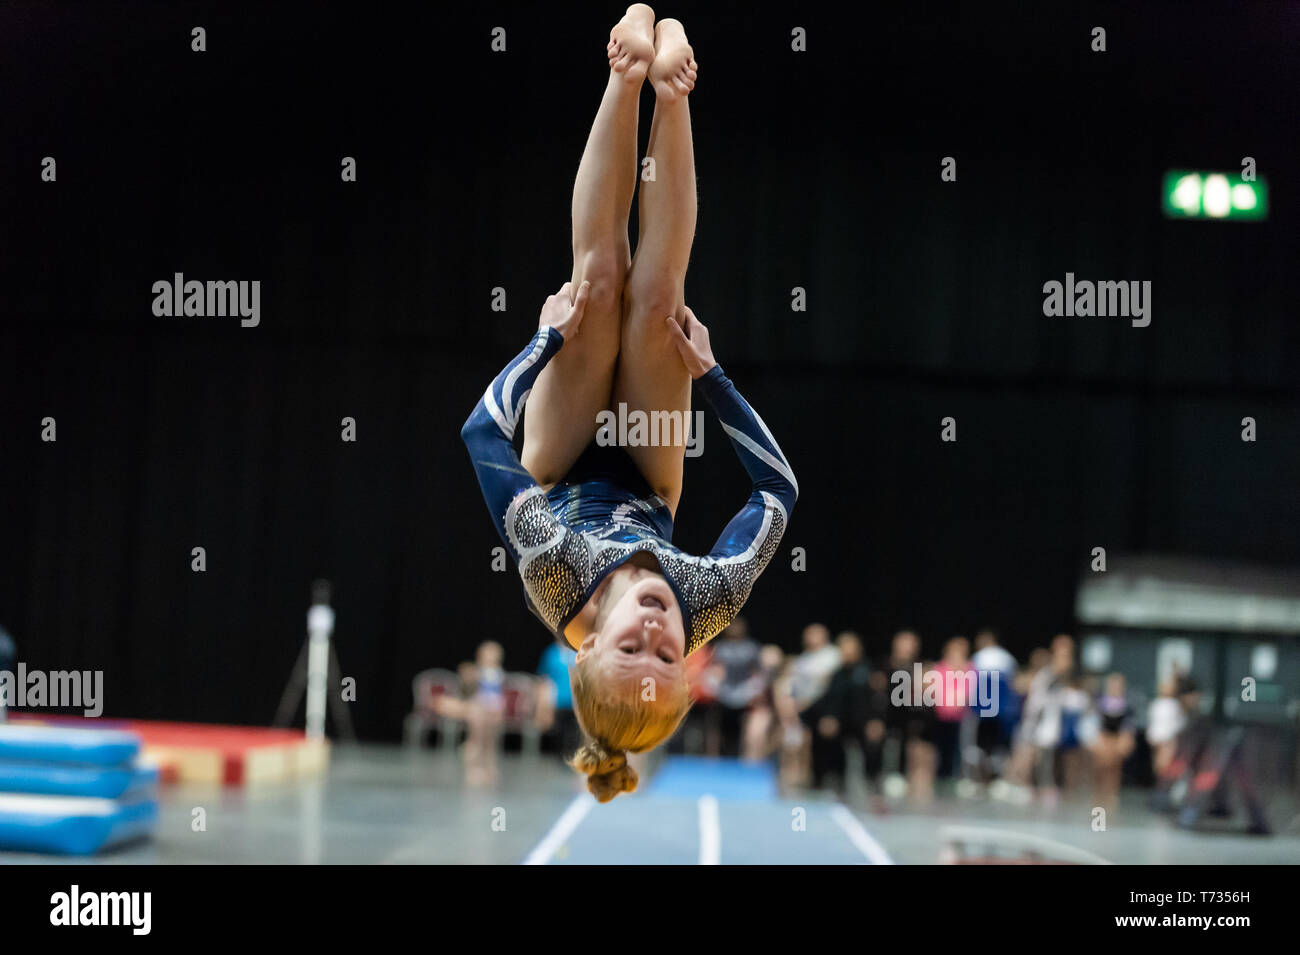 Telford, England, UK. 27 avril, 2018. Sophie Campbell (Saphir Gymnastics Club) en action au cours de séries 1 à l'Telford International Centre, Telford, Royaume-Uni. Banque D'Images